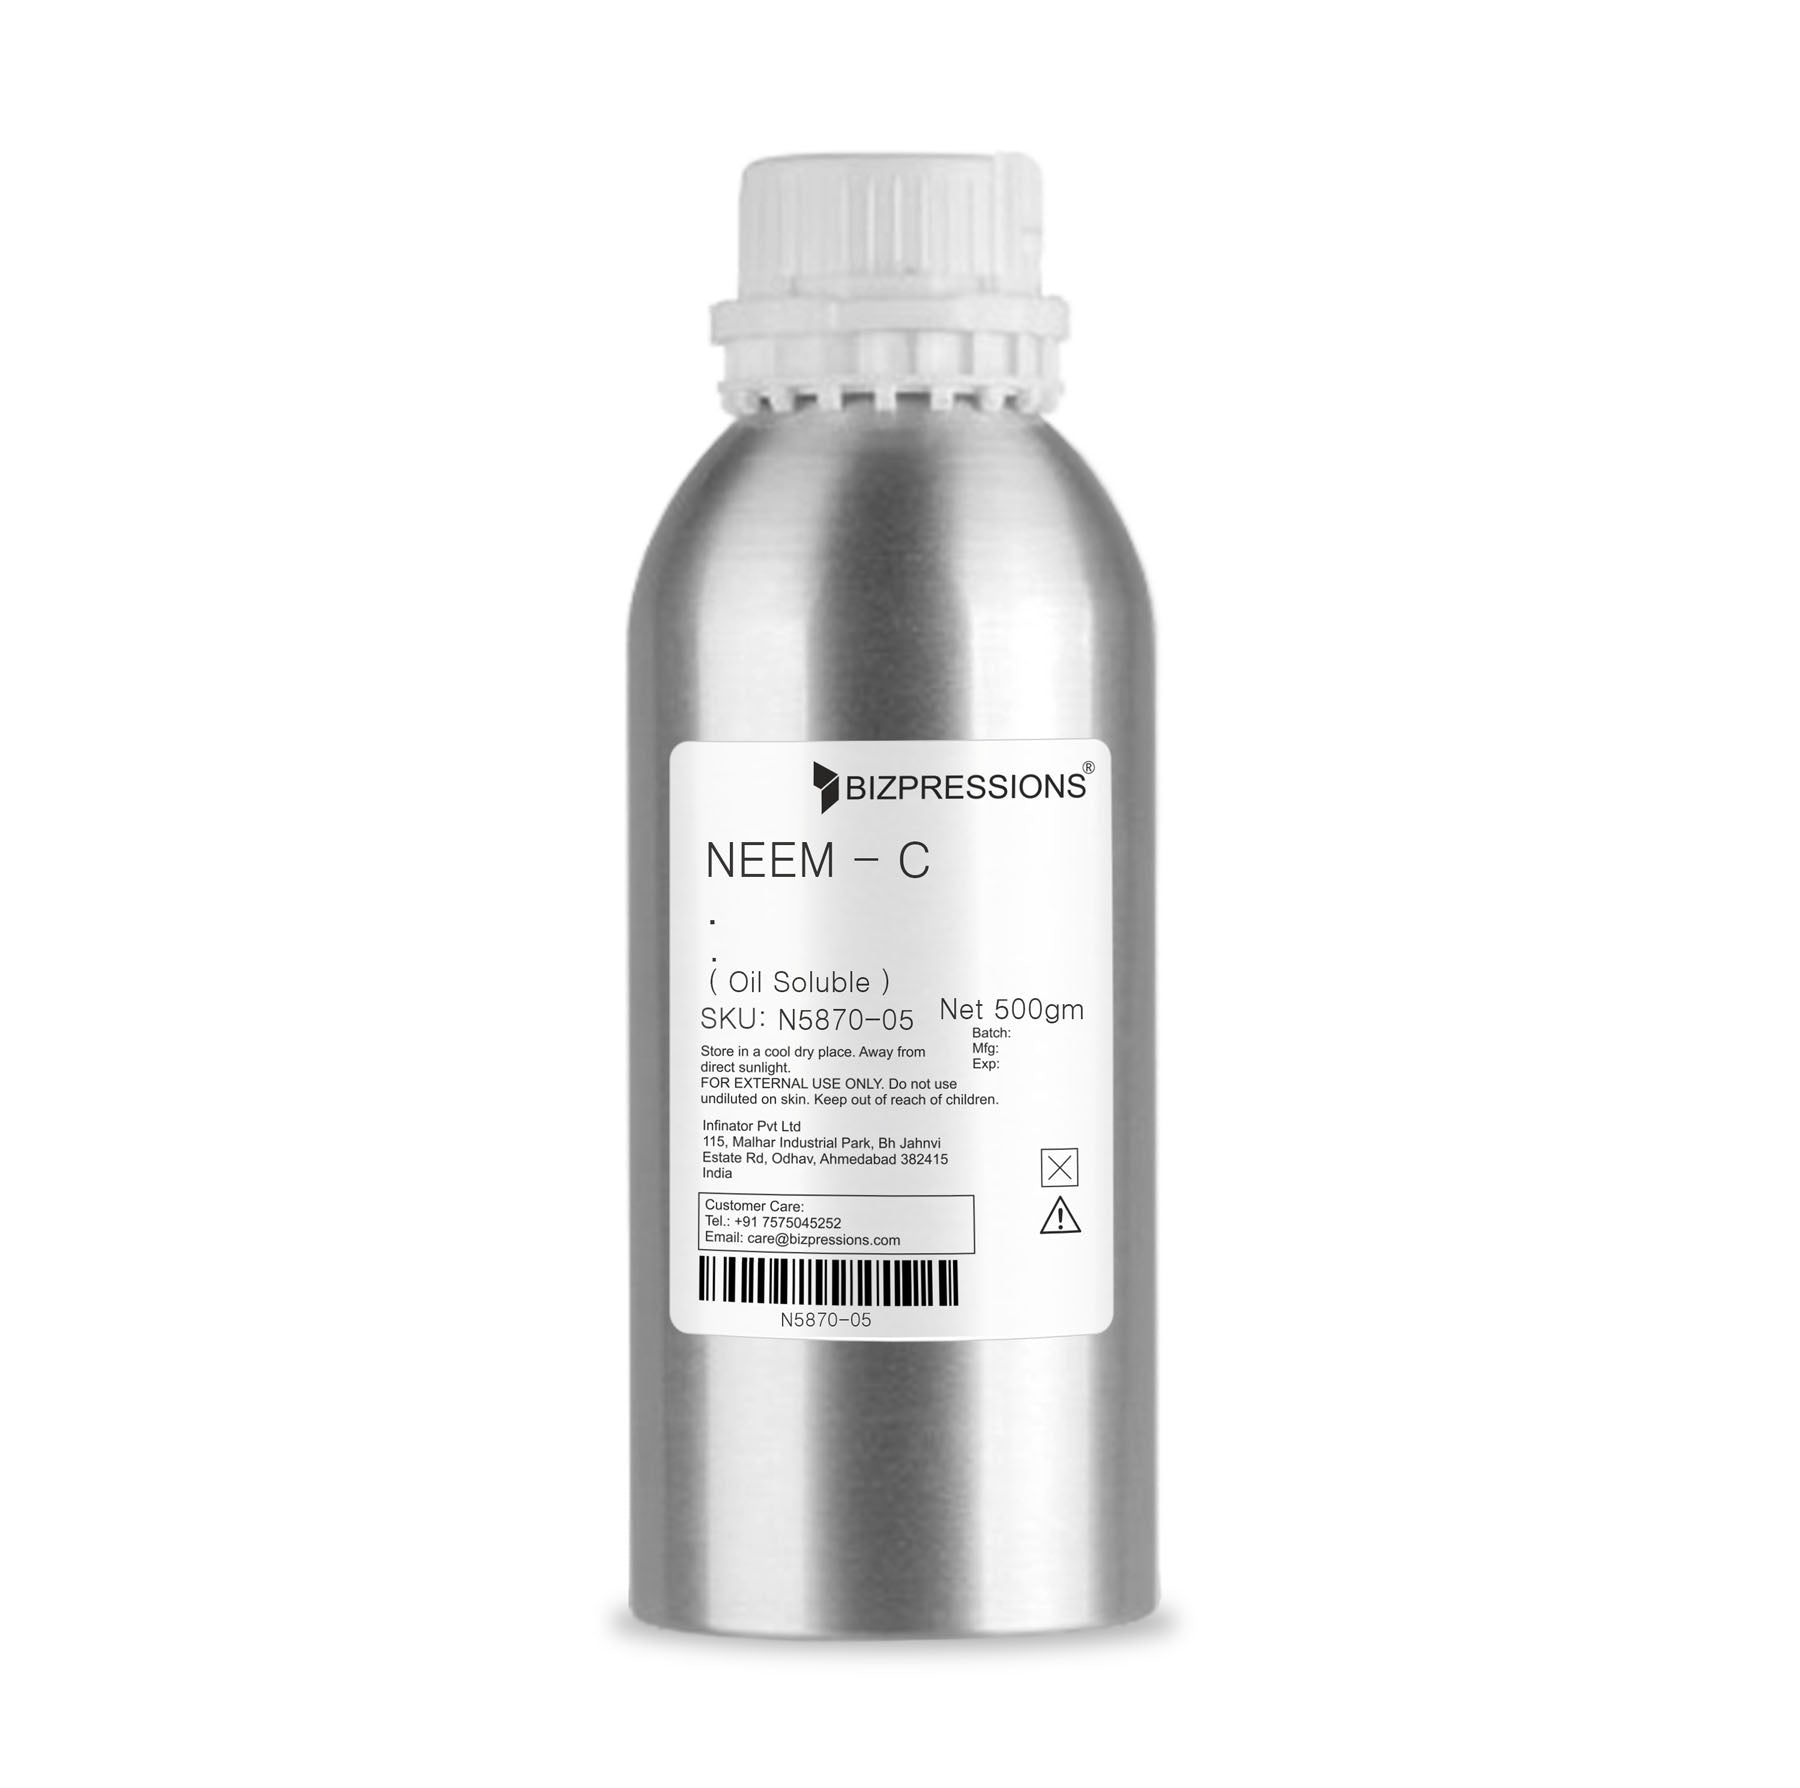 NEEM - C - Fragrance ( Oil Soluble ) - 500 gm